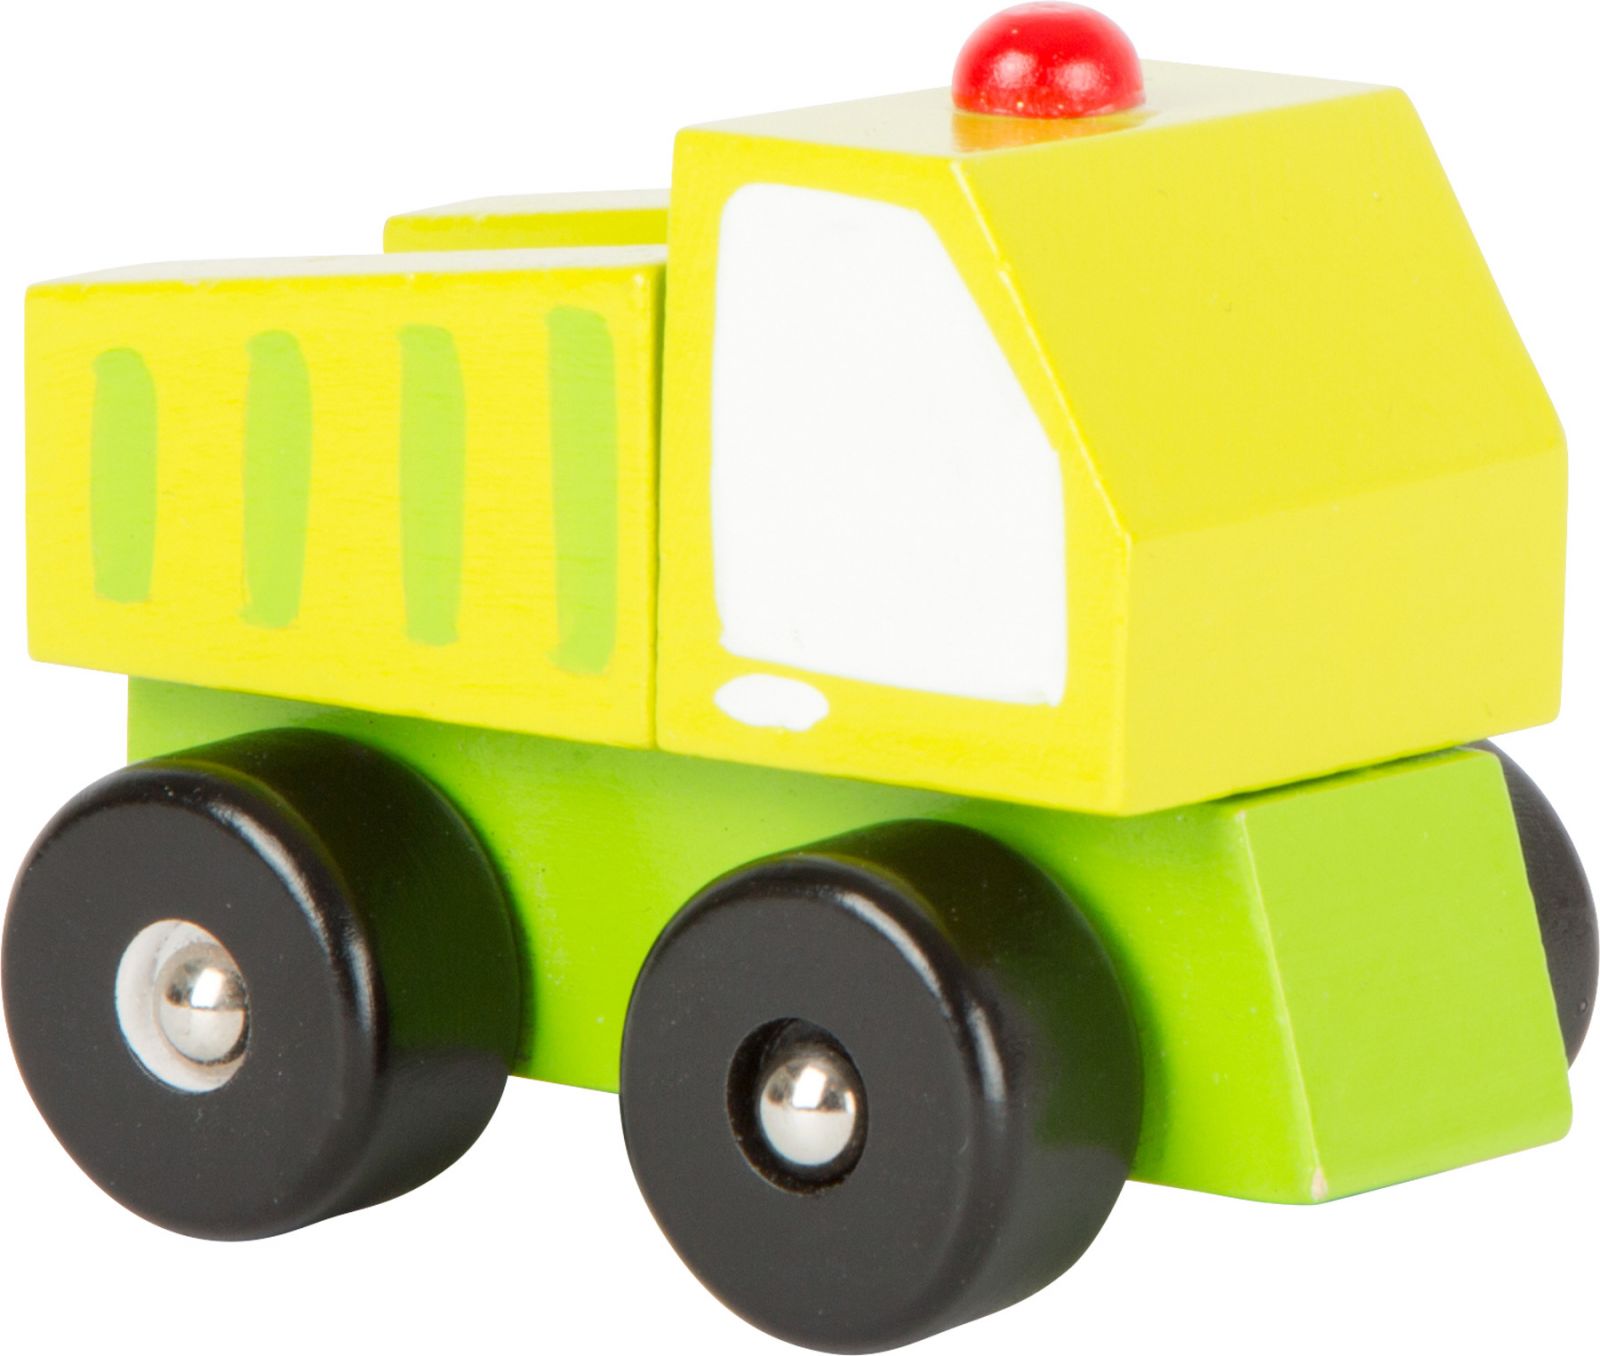 Dřevěné hračky Dřevěná autíčka - Stavební stroje 1 ks Small foot by Legler